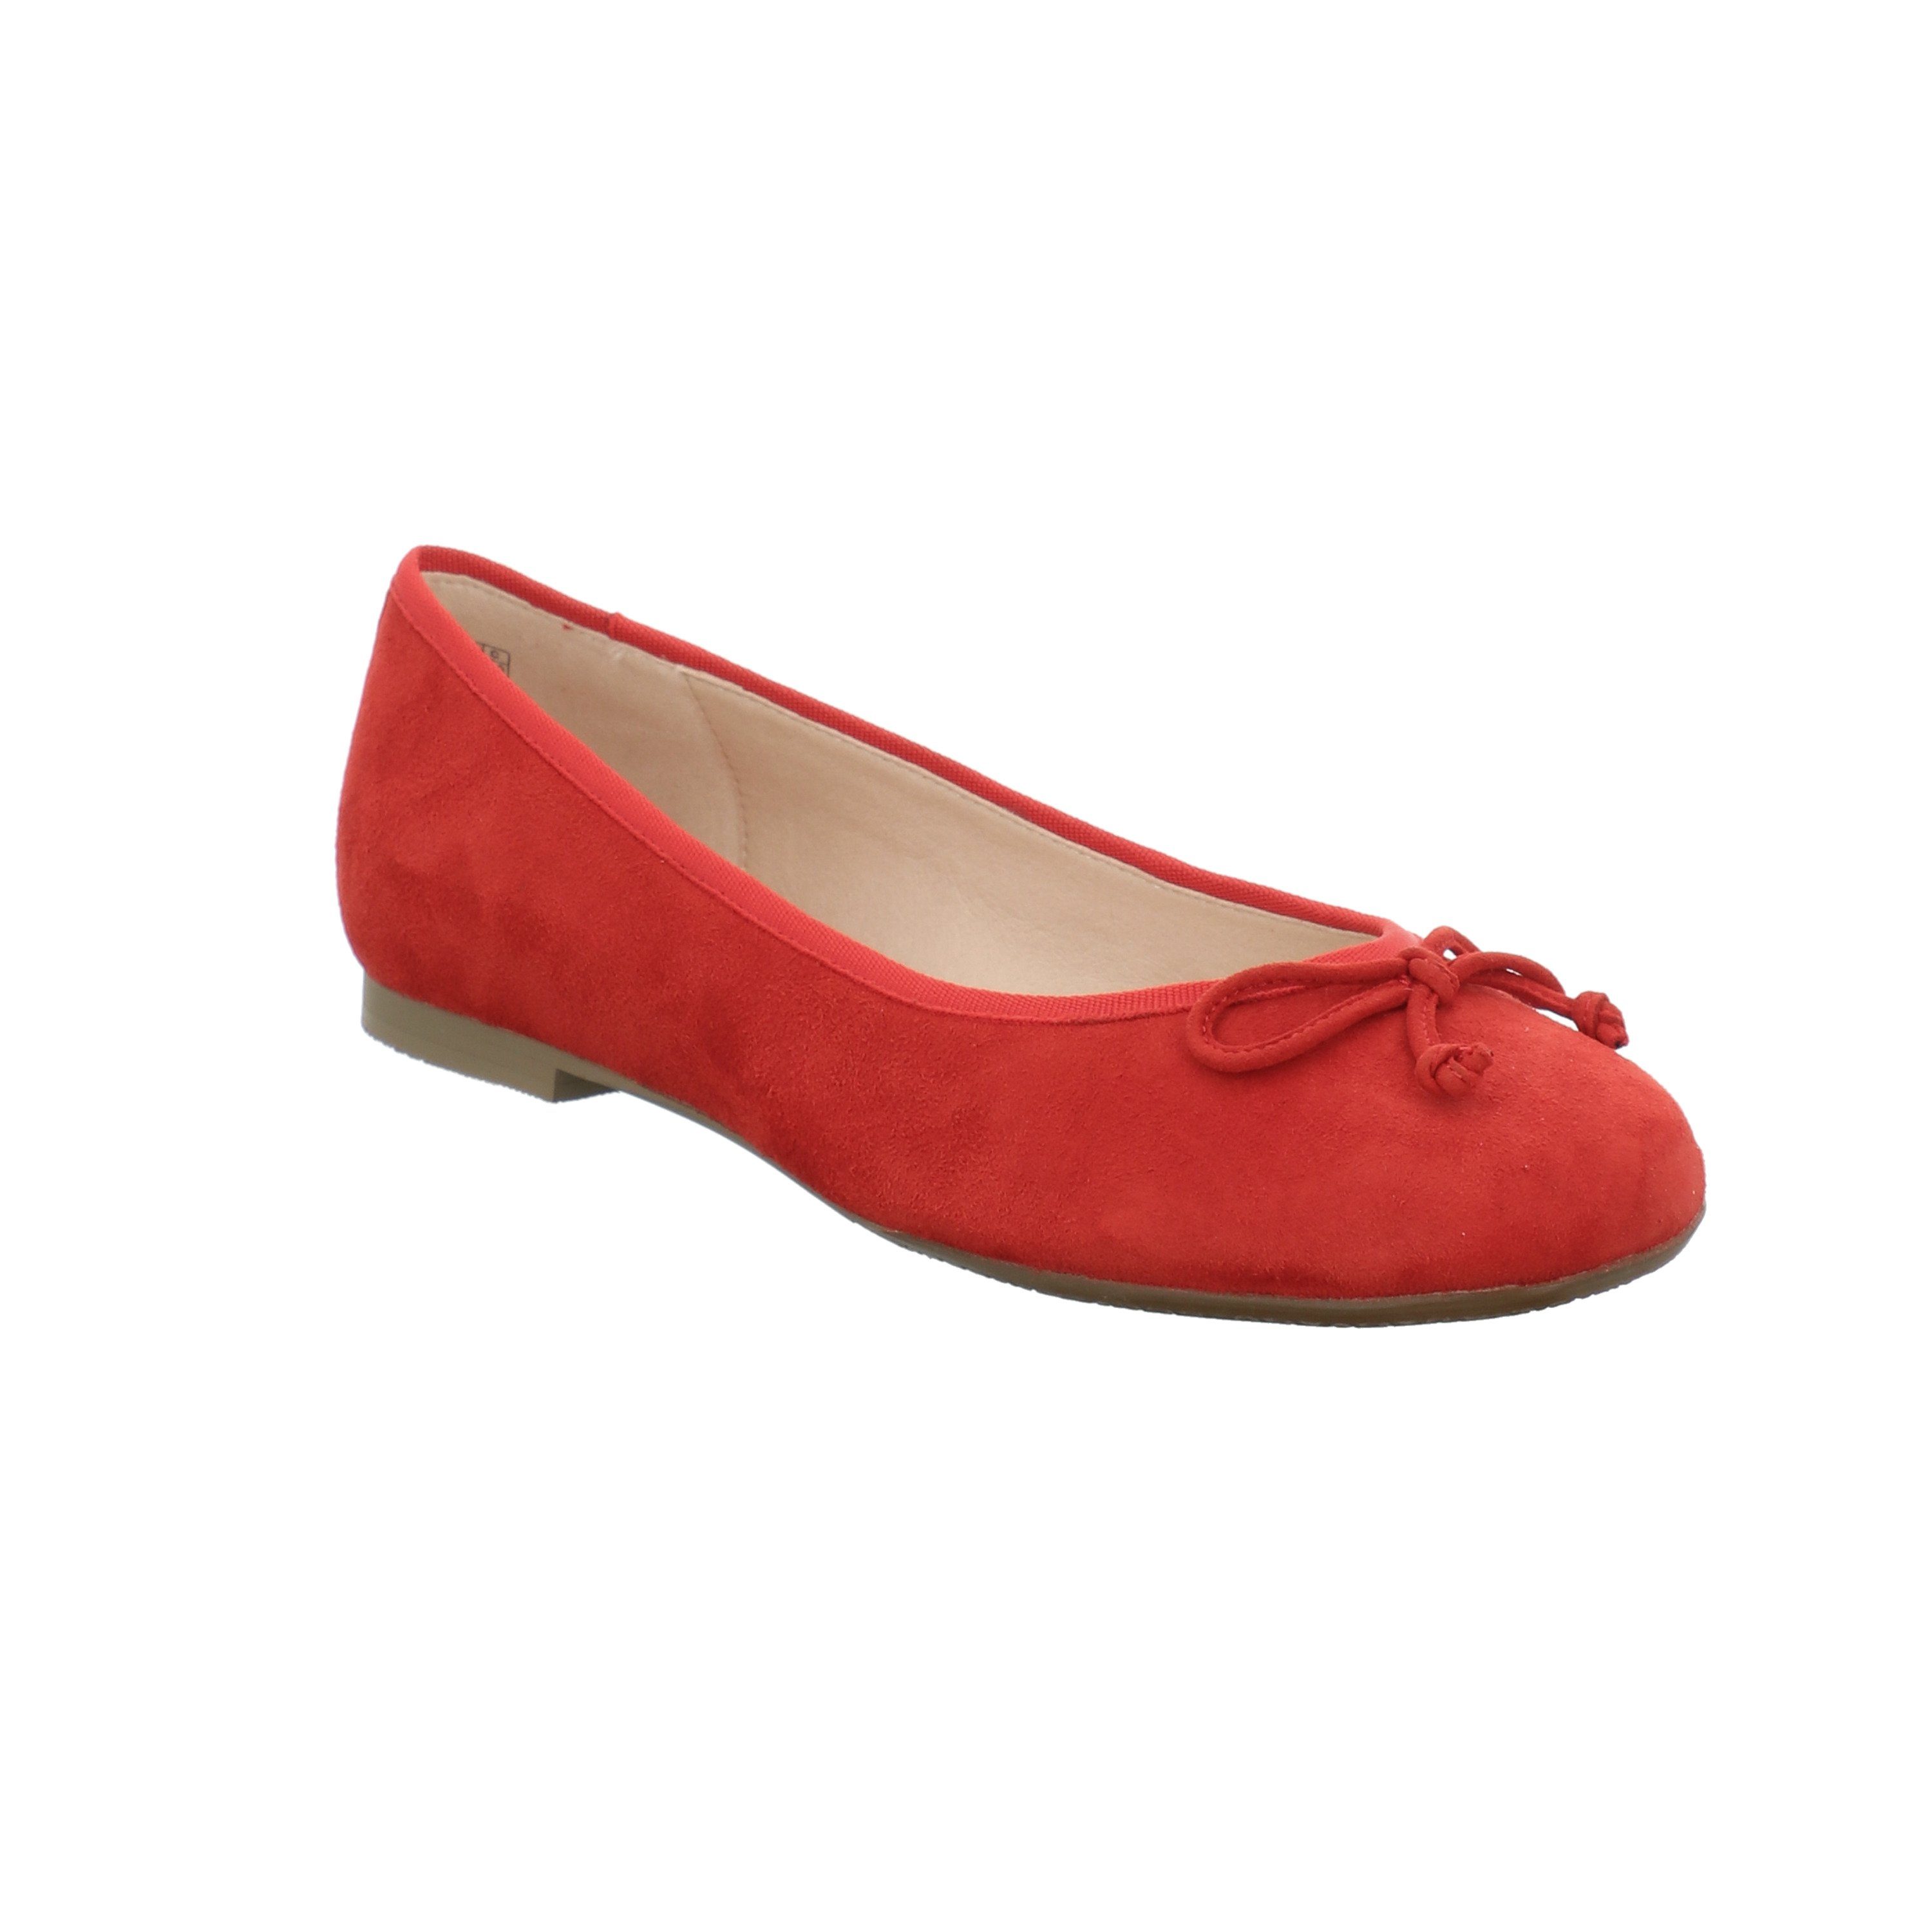 Rote Ballerinas mit spitzer Spitze für Damen kaufen | OTTO